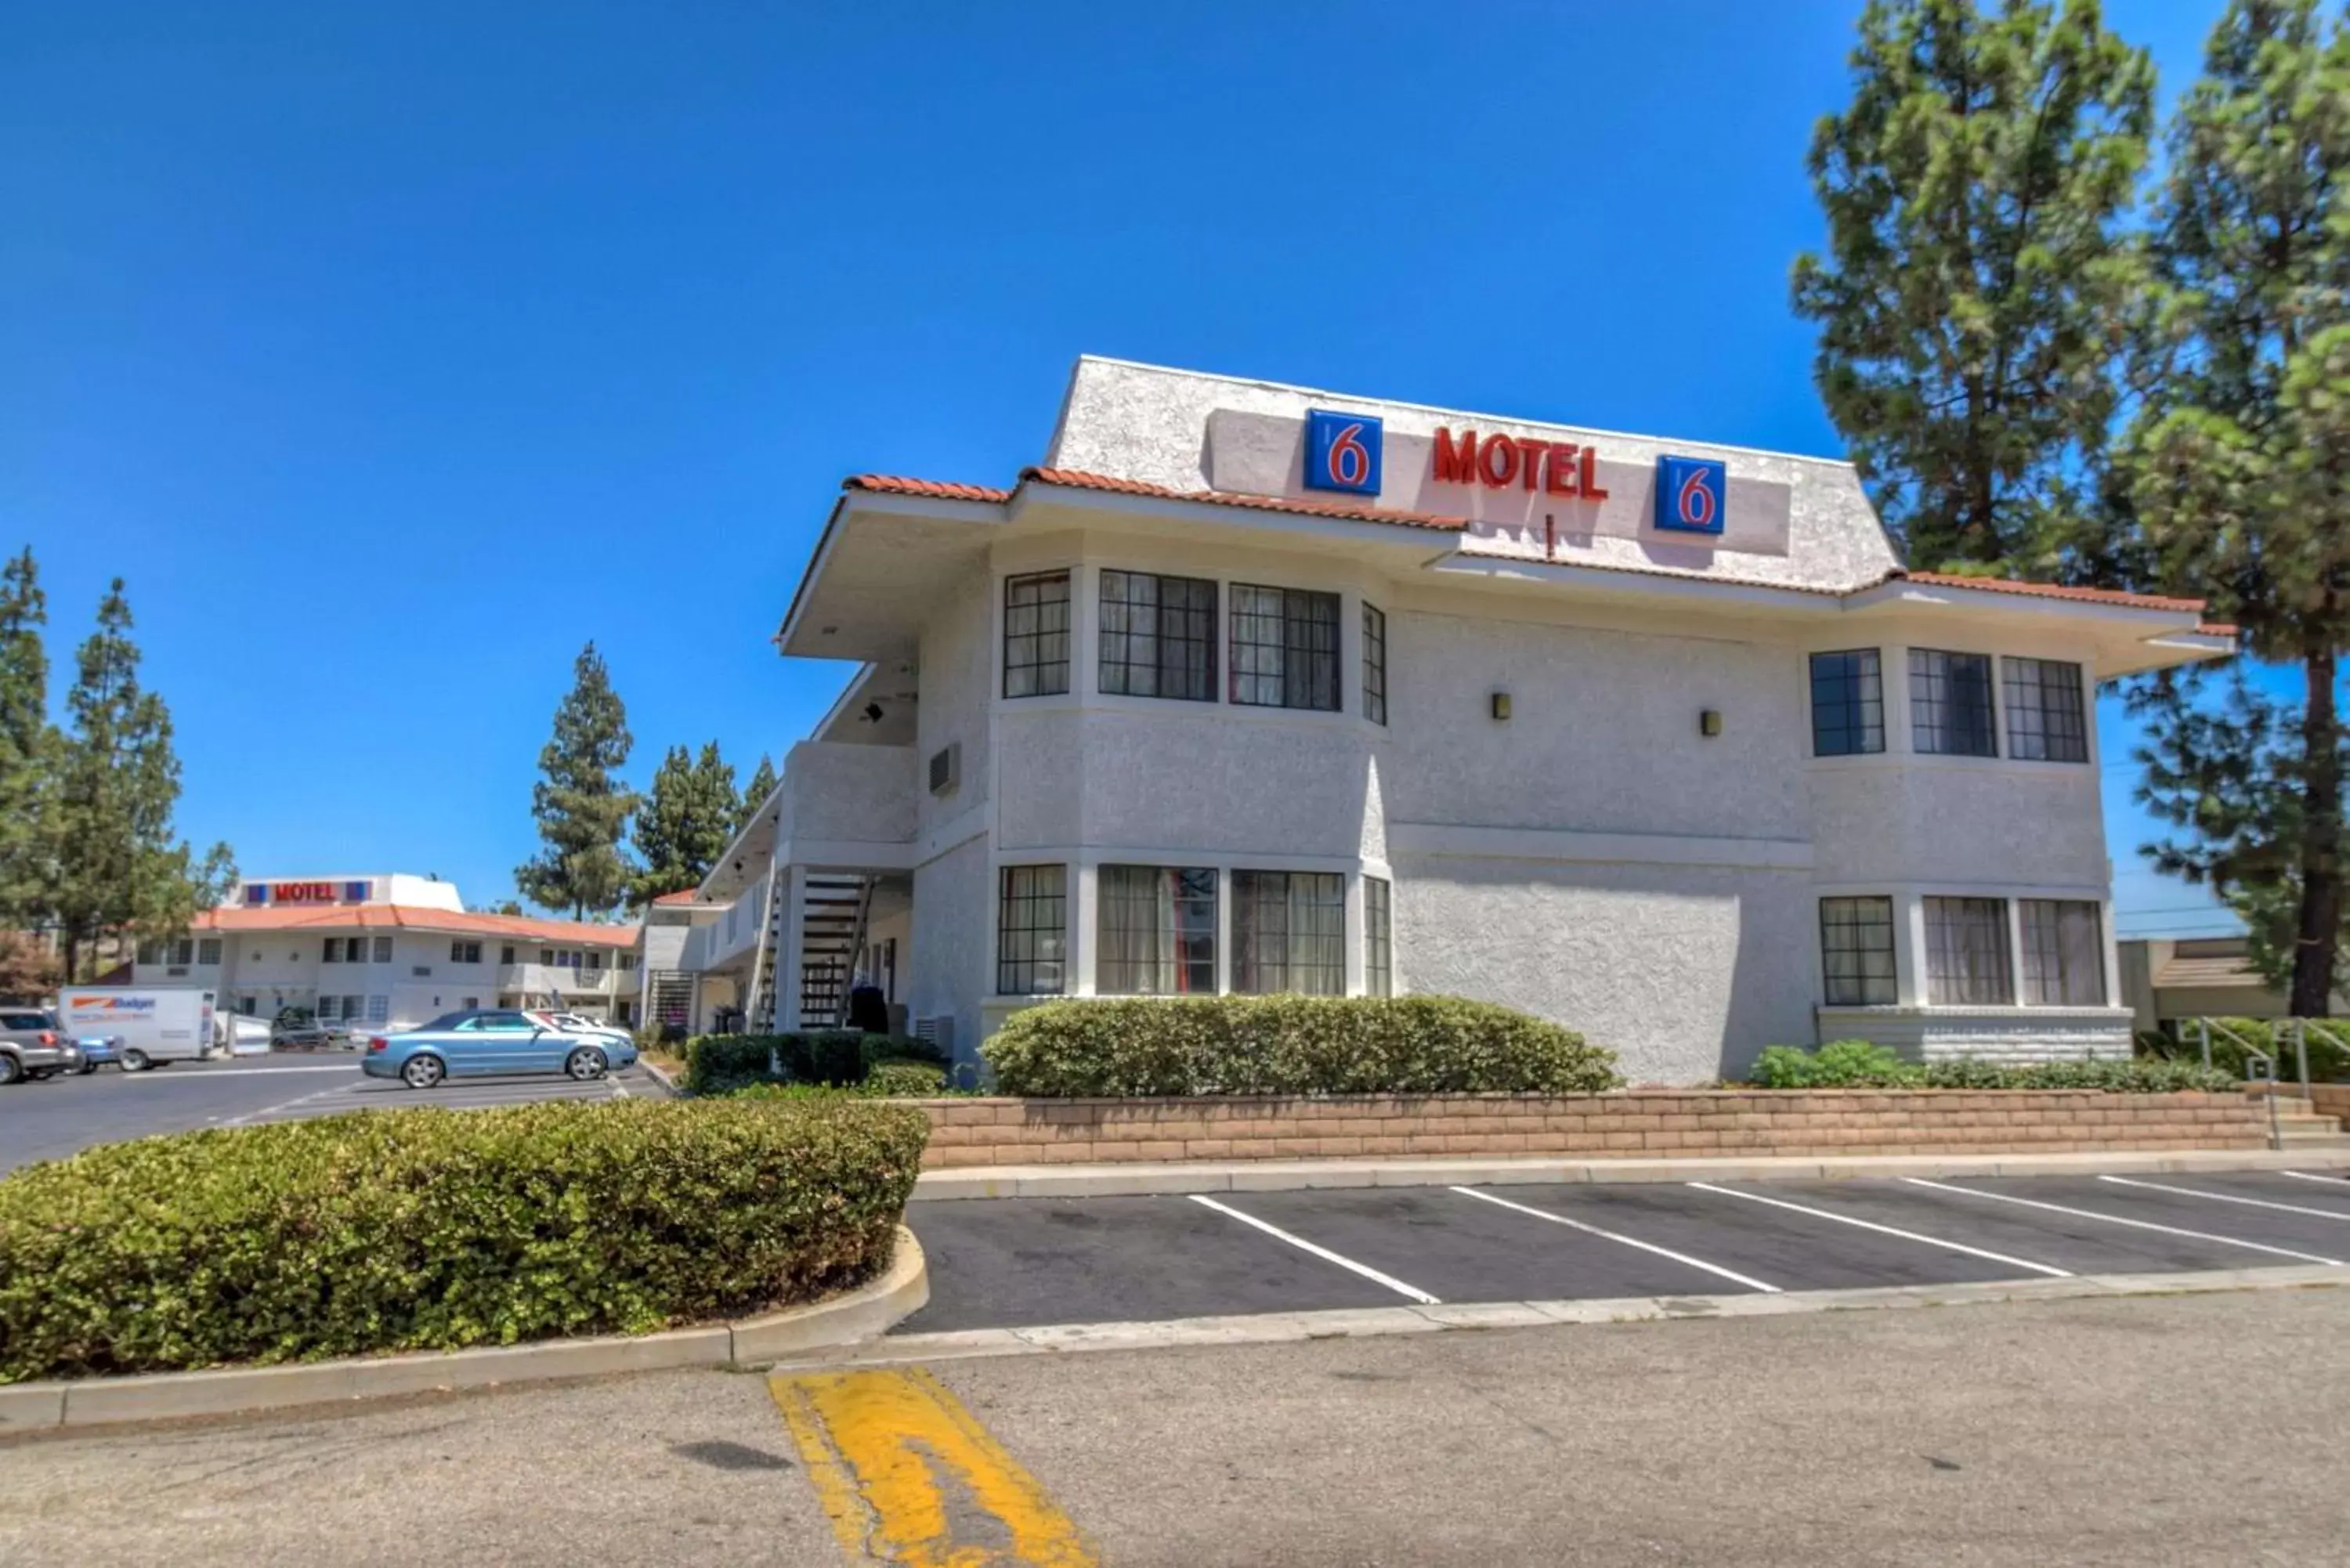 Property building, Facade/Entrance in Motel 6-San Dimas, CA - Los Angeles